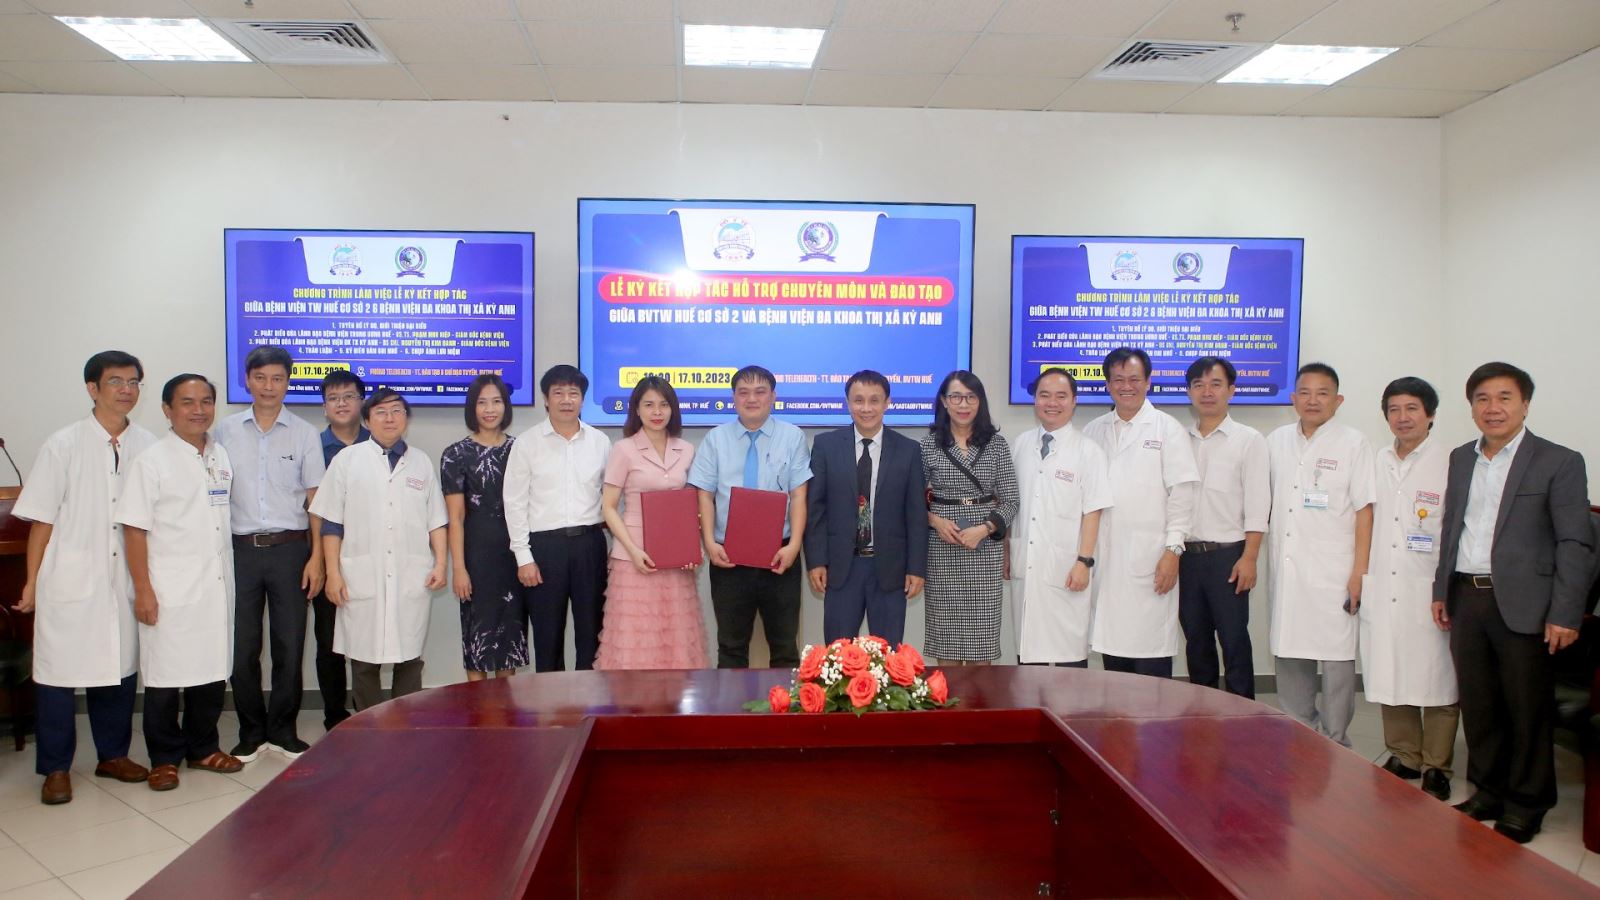 Hàng năm, BV TW Huế đã chuyển giao hàng trăm kỹ thuật, góp phần nâng cao chất lượng khám chữa bệnh cho các bệnh viện tuyến dưới khu vực miền Trung - Tây Nguyên và cả nước.